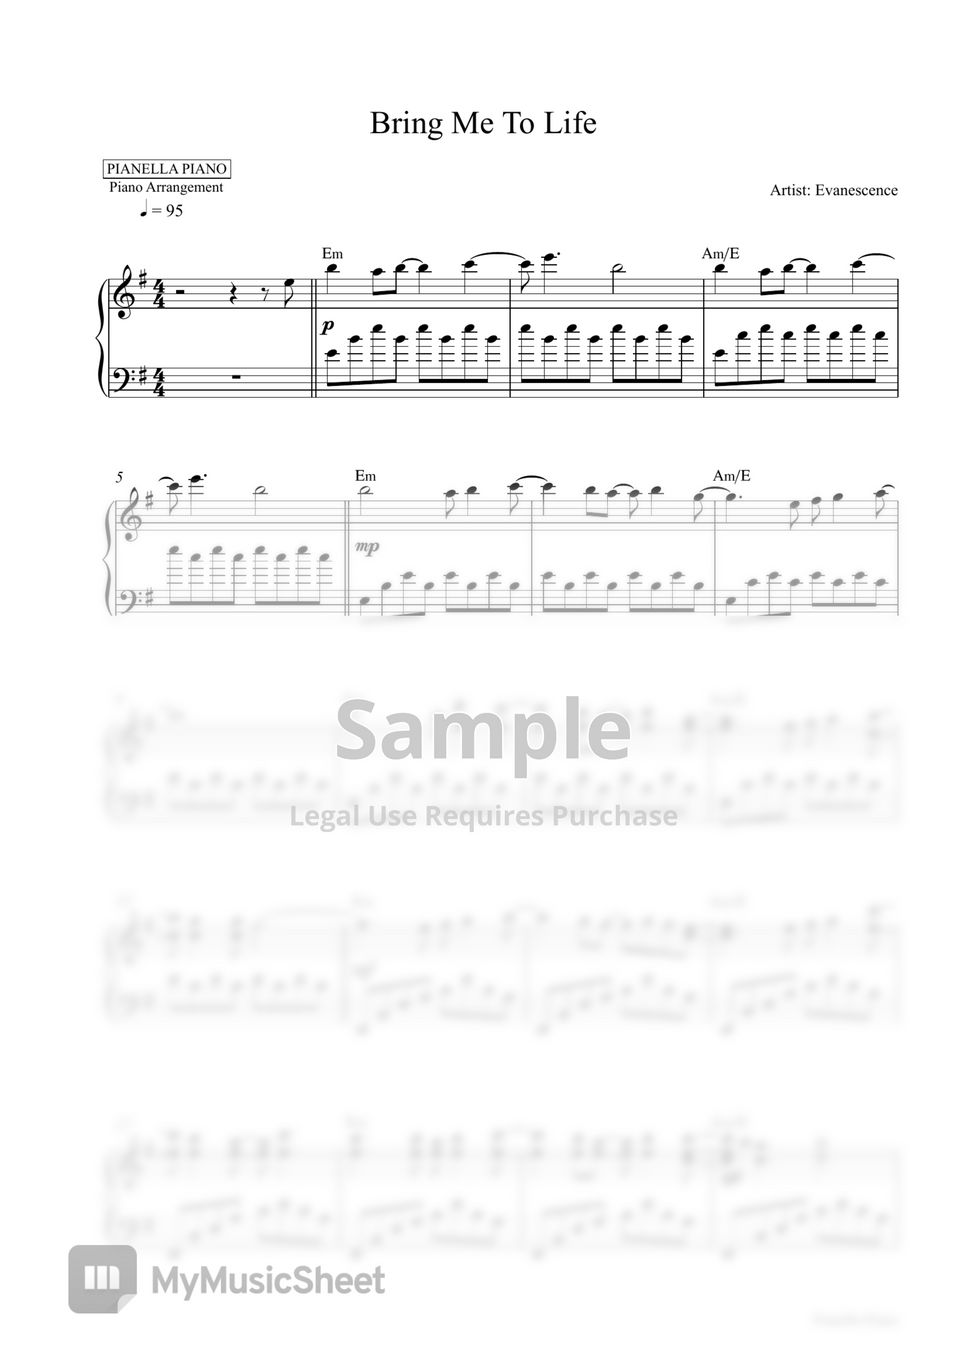 Evanescence - Bring Me To Life (Piano Sheet) by Pianella Piano